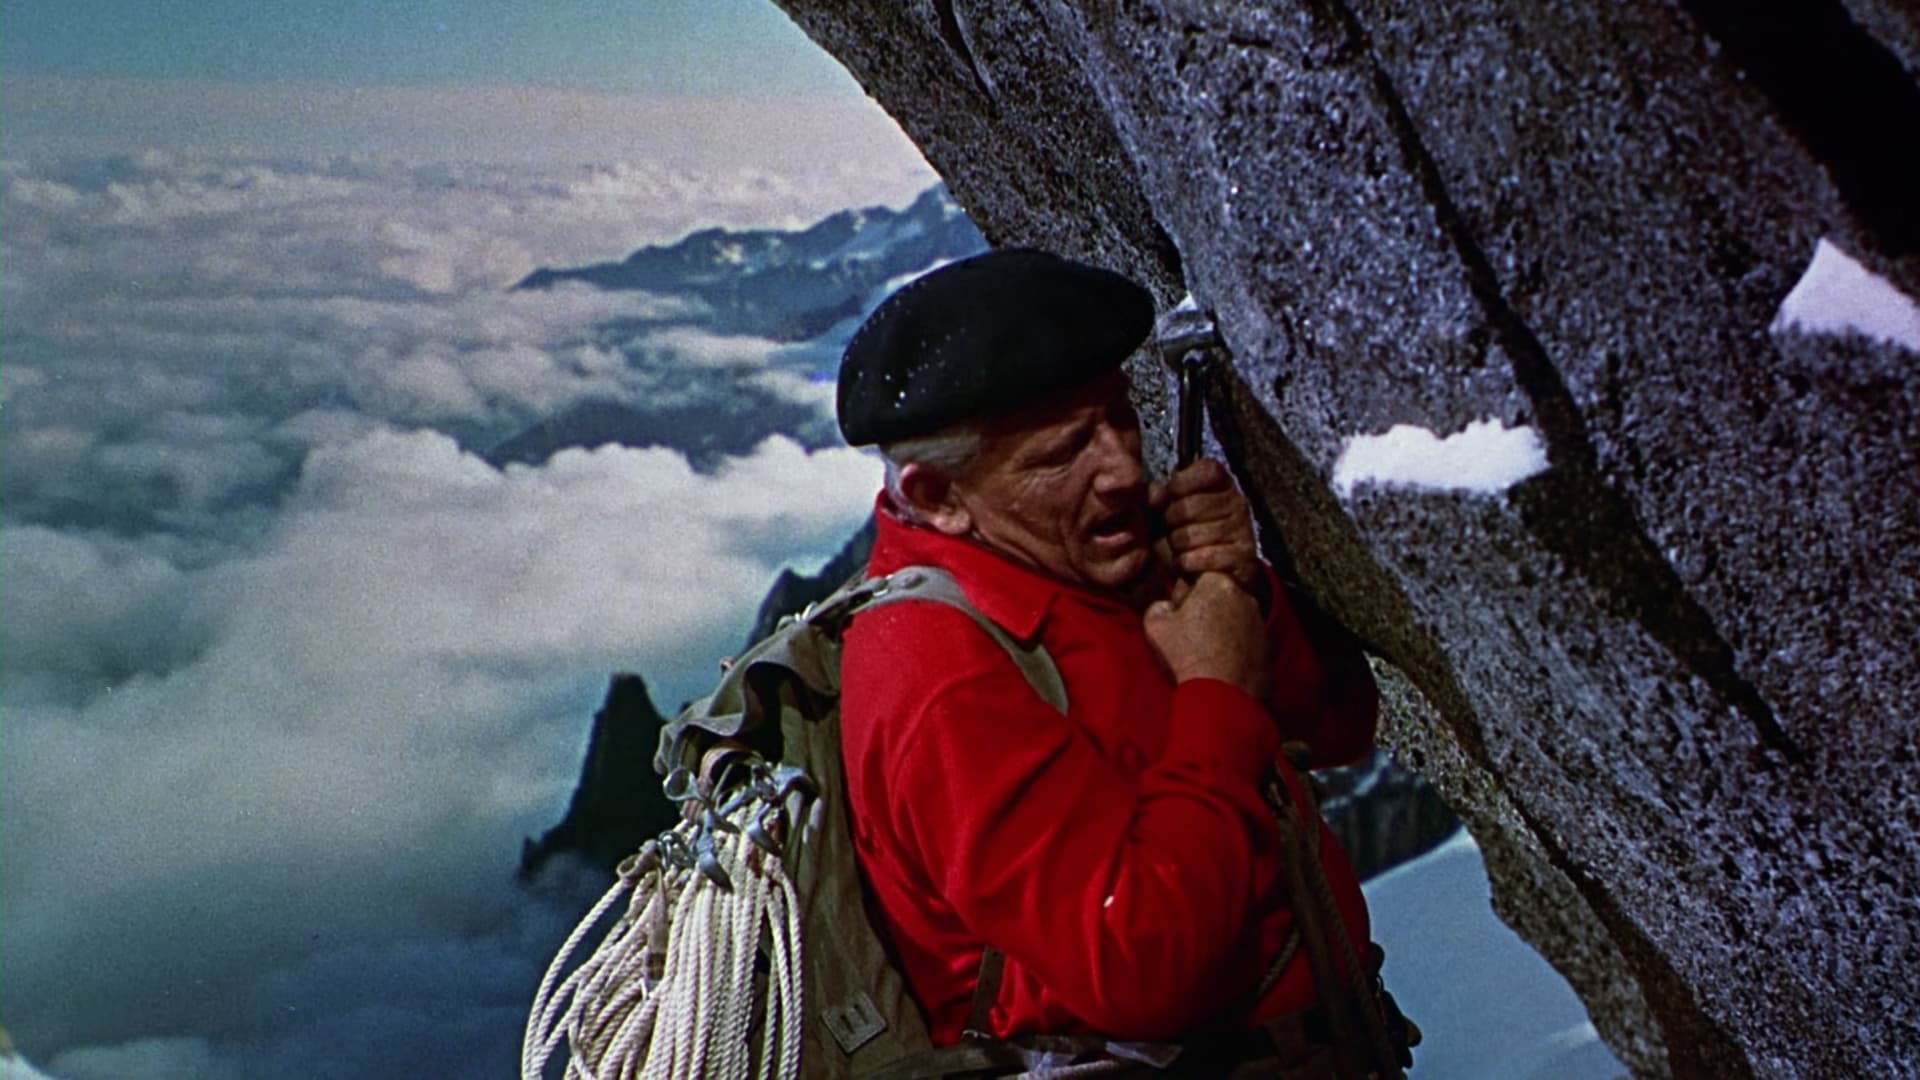 The Mountain (1956)